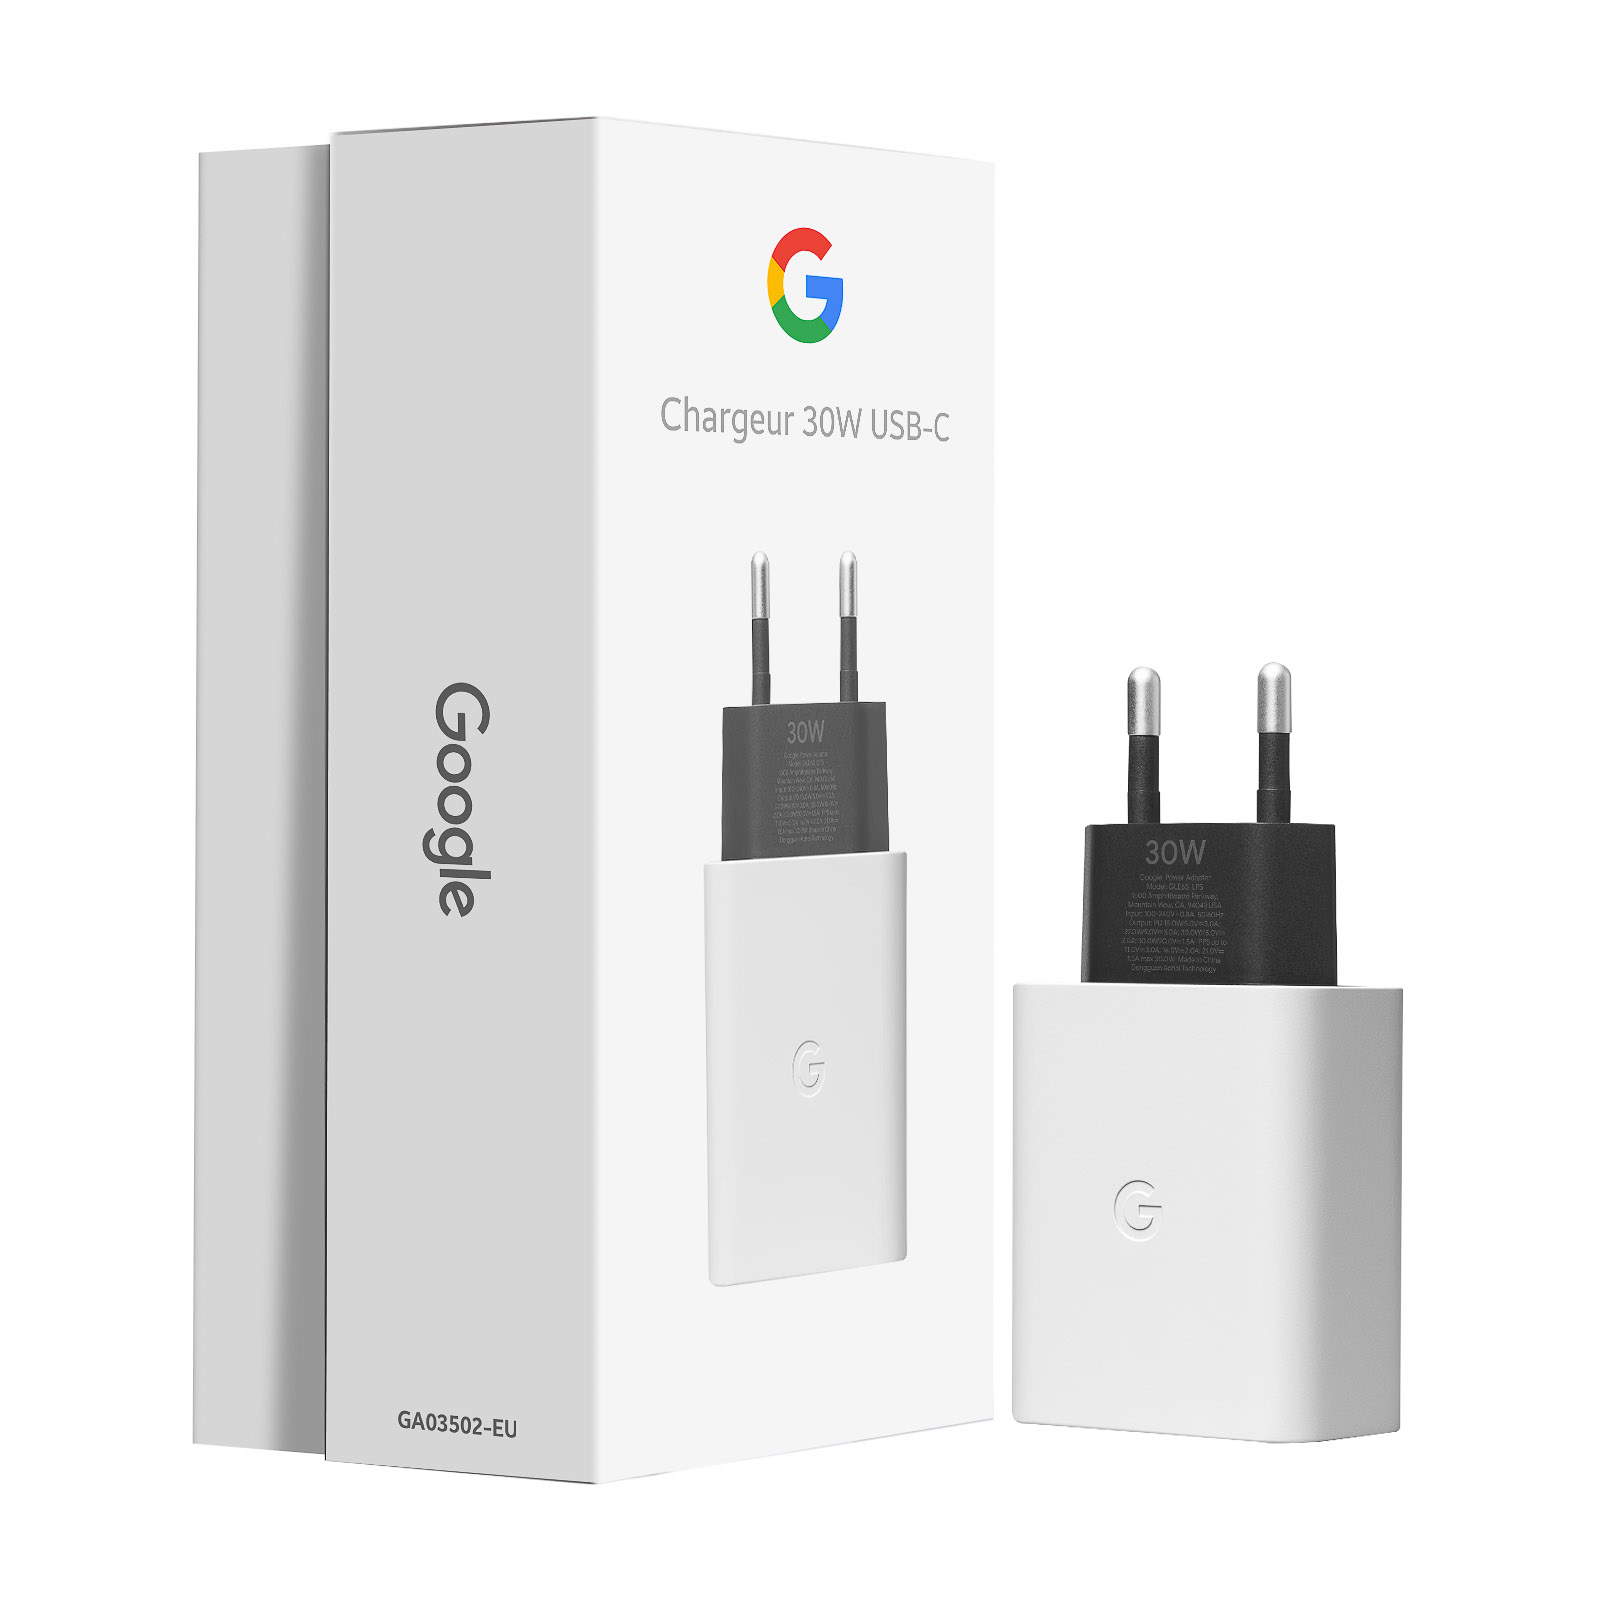 Chargeur Google 30W d'Origine, USB-C Power Delivery - Français